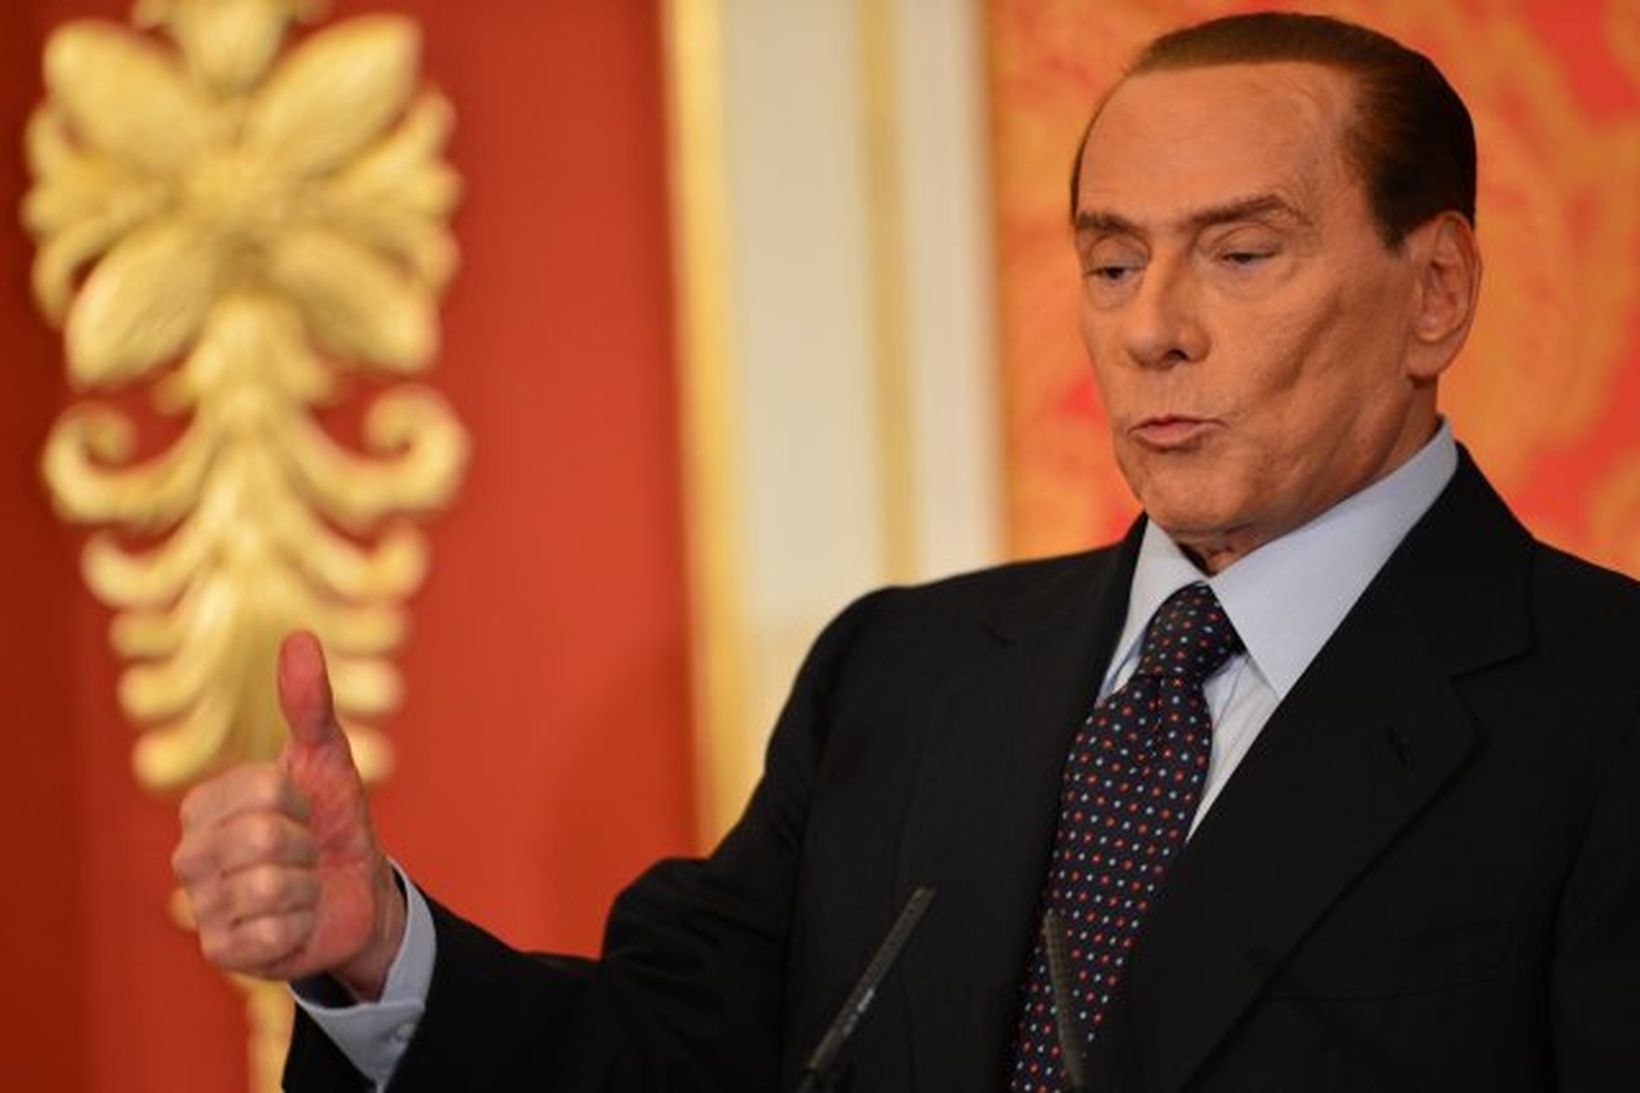 Silvio Berlusconi hélt blaðamannafund á Ítalíu í dag.